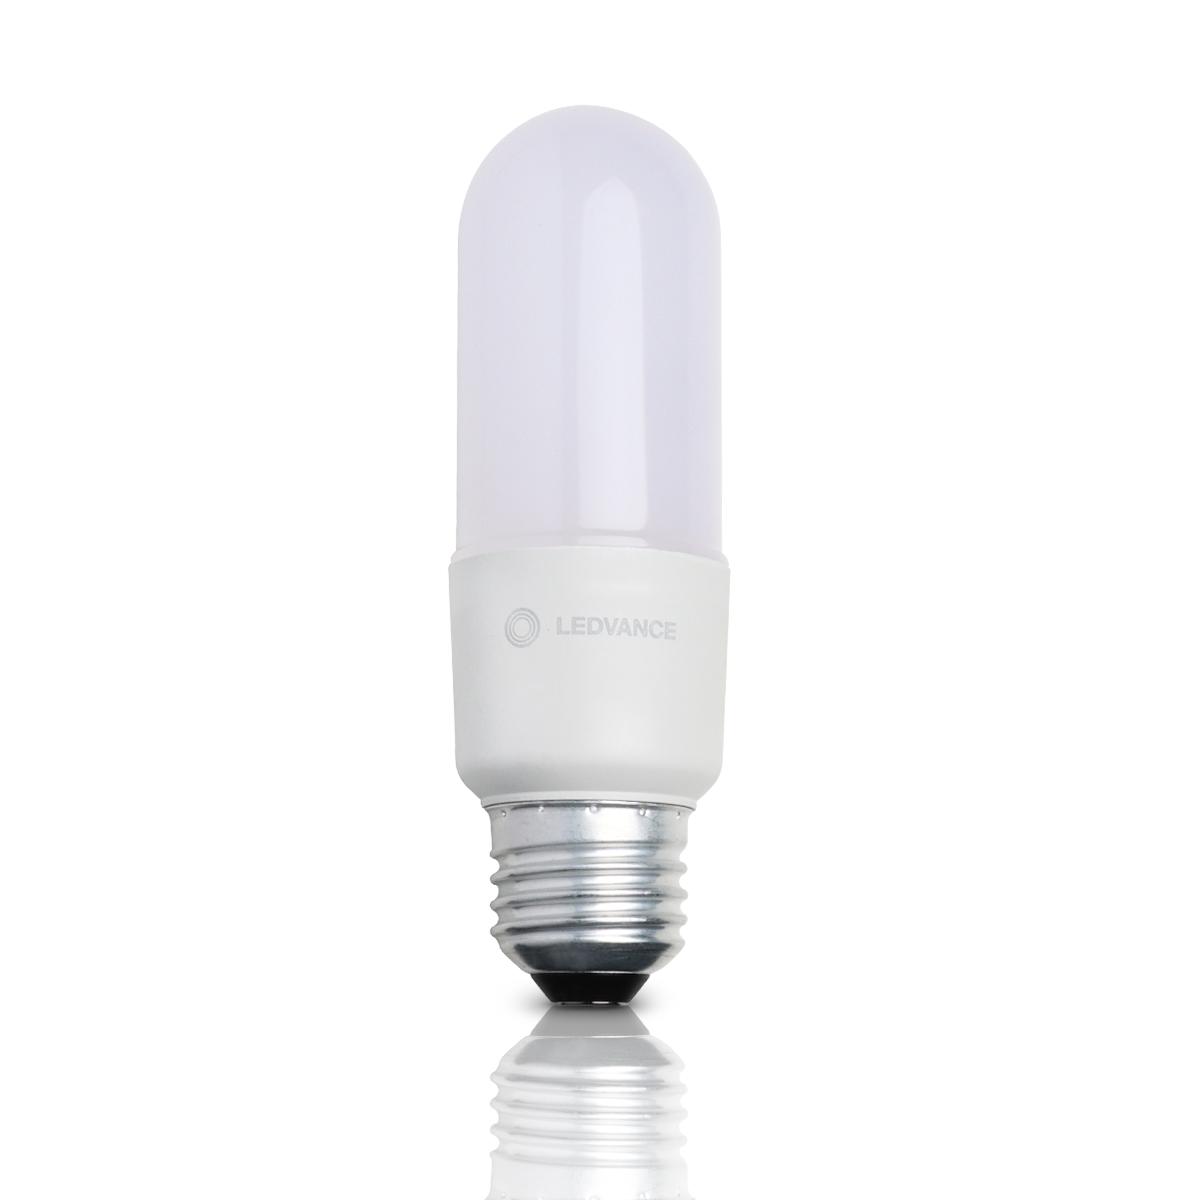 Ledvance LED Warmweiß E27 8W 806lm - Classic Stick LED | Ersatz für 60W